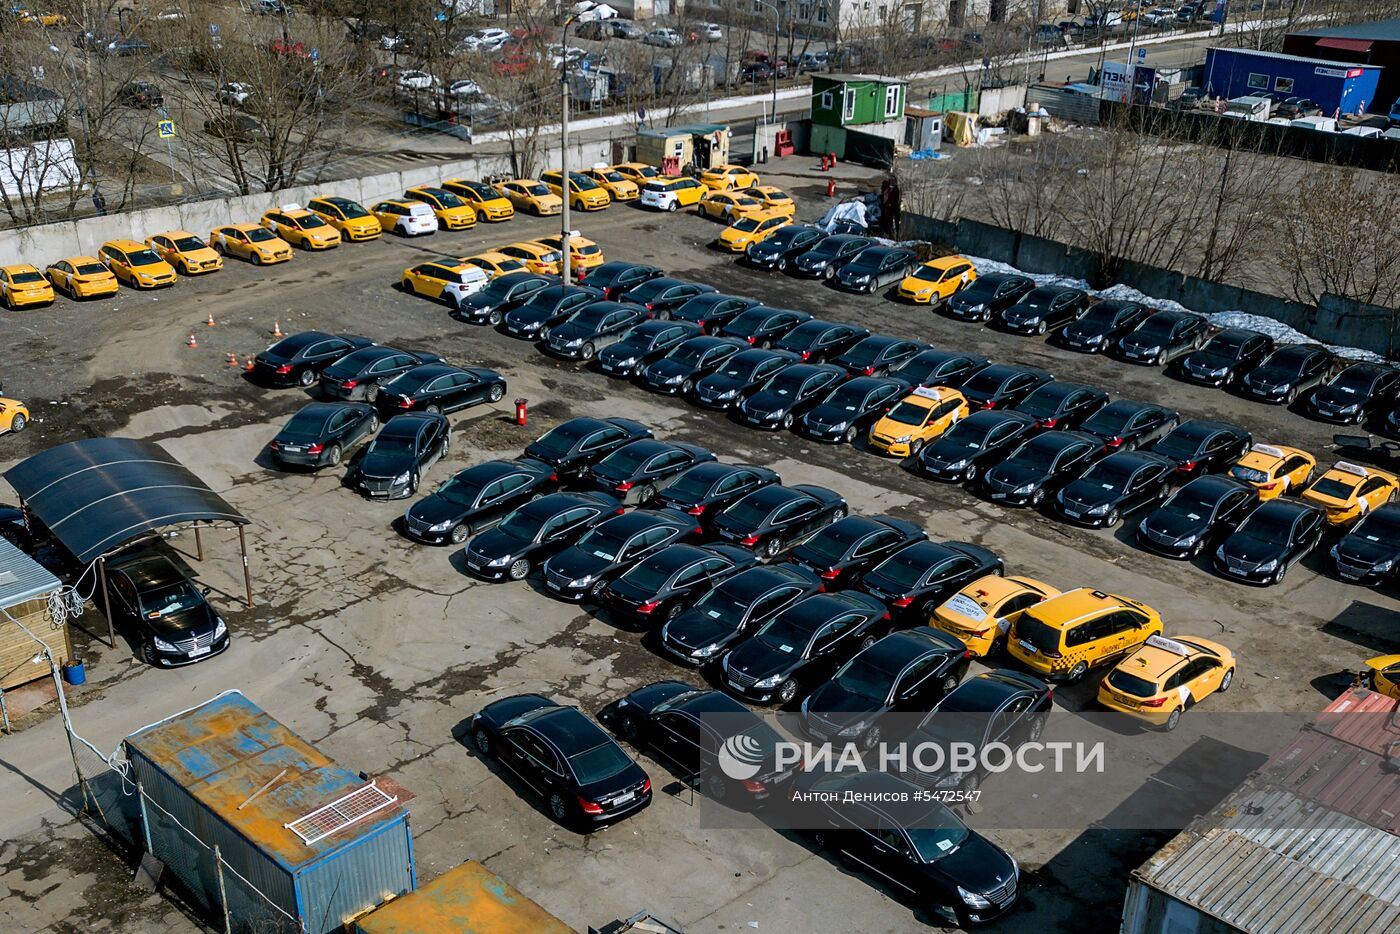 кладбище каршеринговых машин в москве